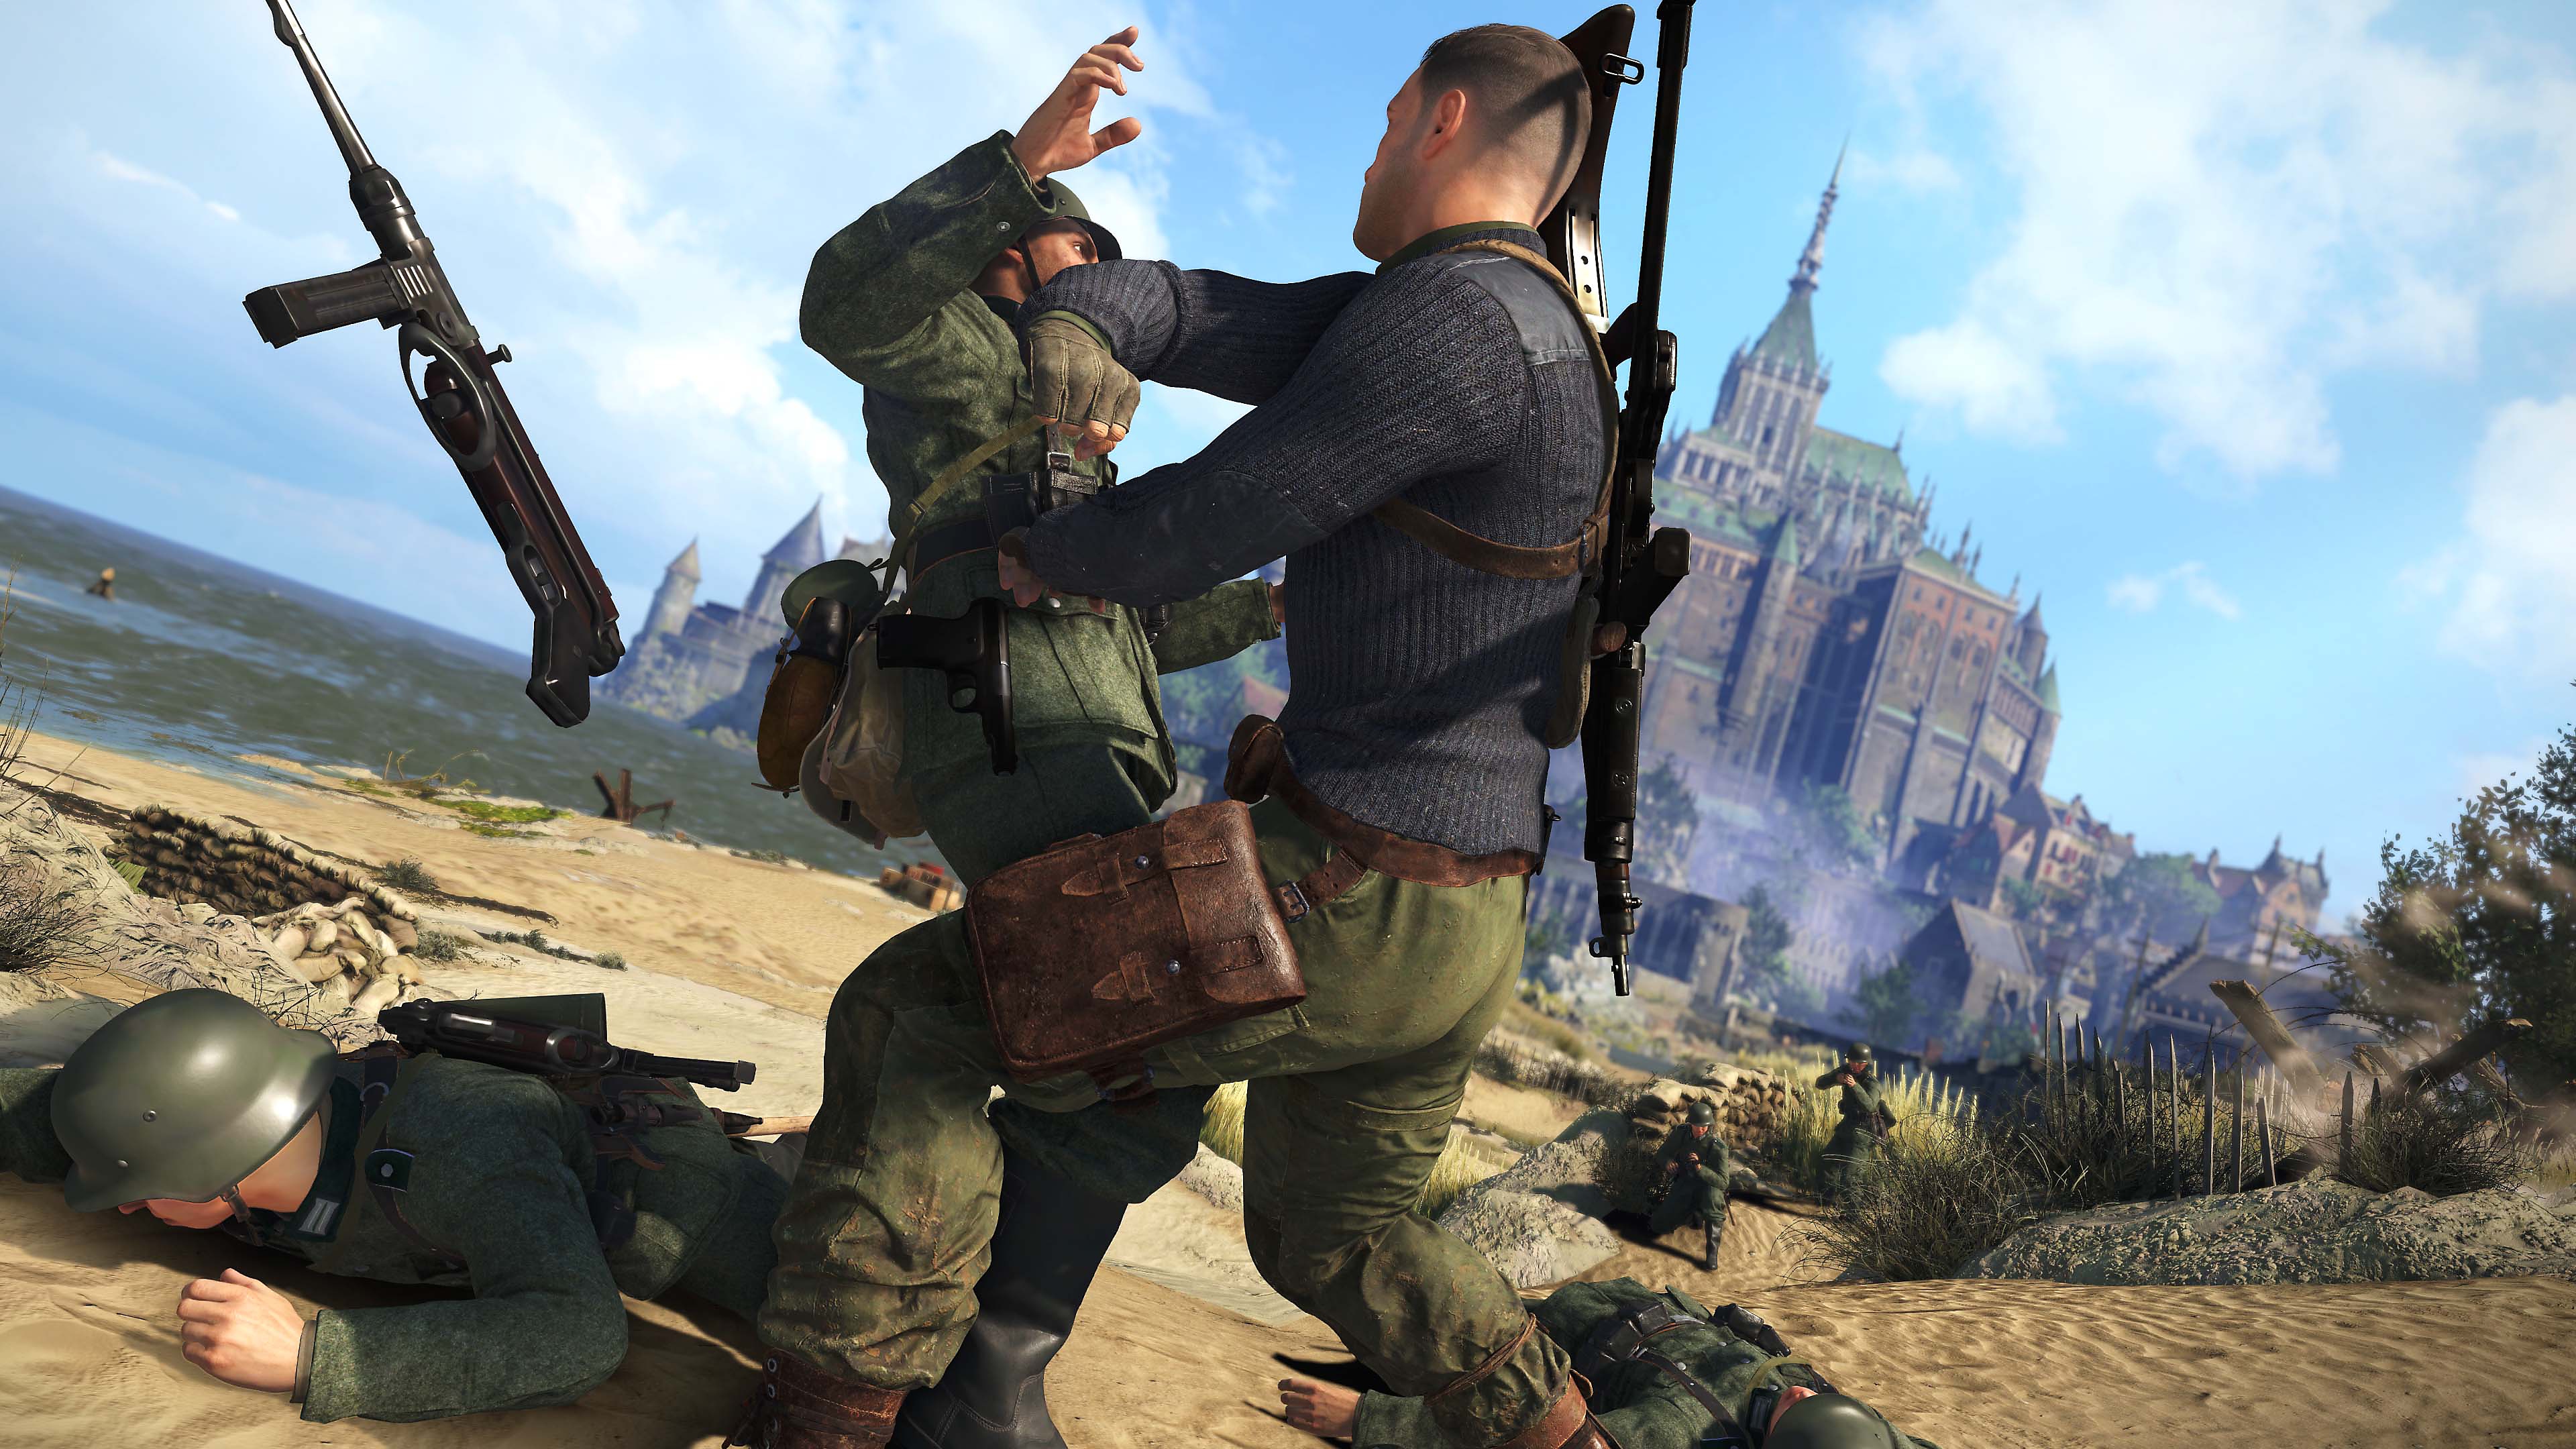 Captura de pantalla de Sniper Elite 5 mostrando combate cuerpo a cuerpo